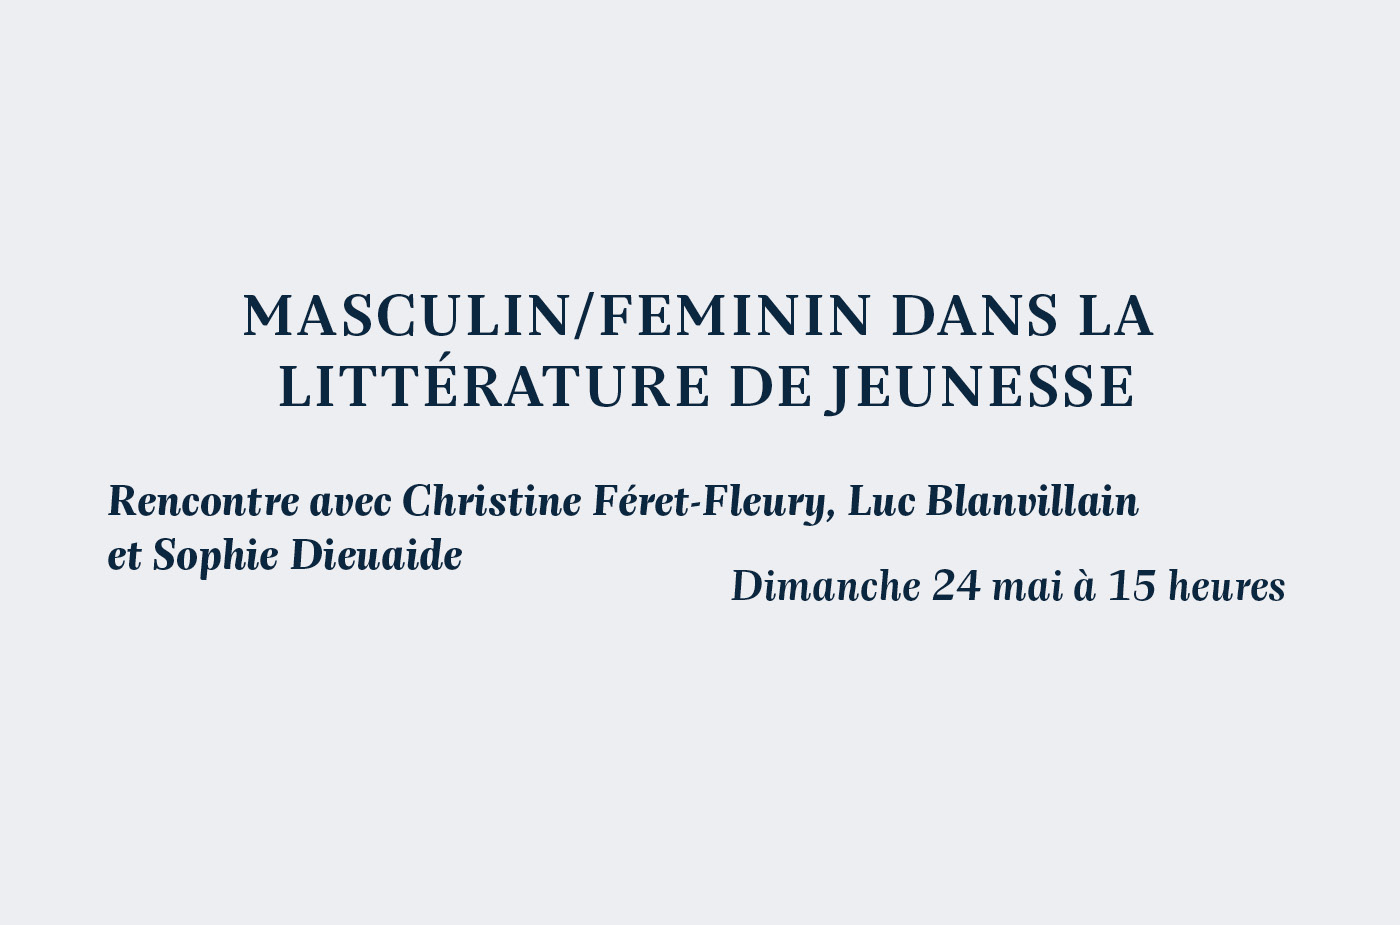 Rencontre avec Christine Féret-Fleury, Luc Blanvillain et Sophie Dieuaide